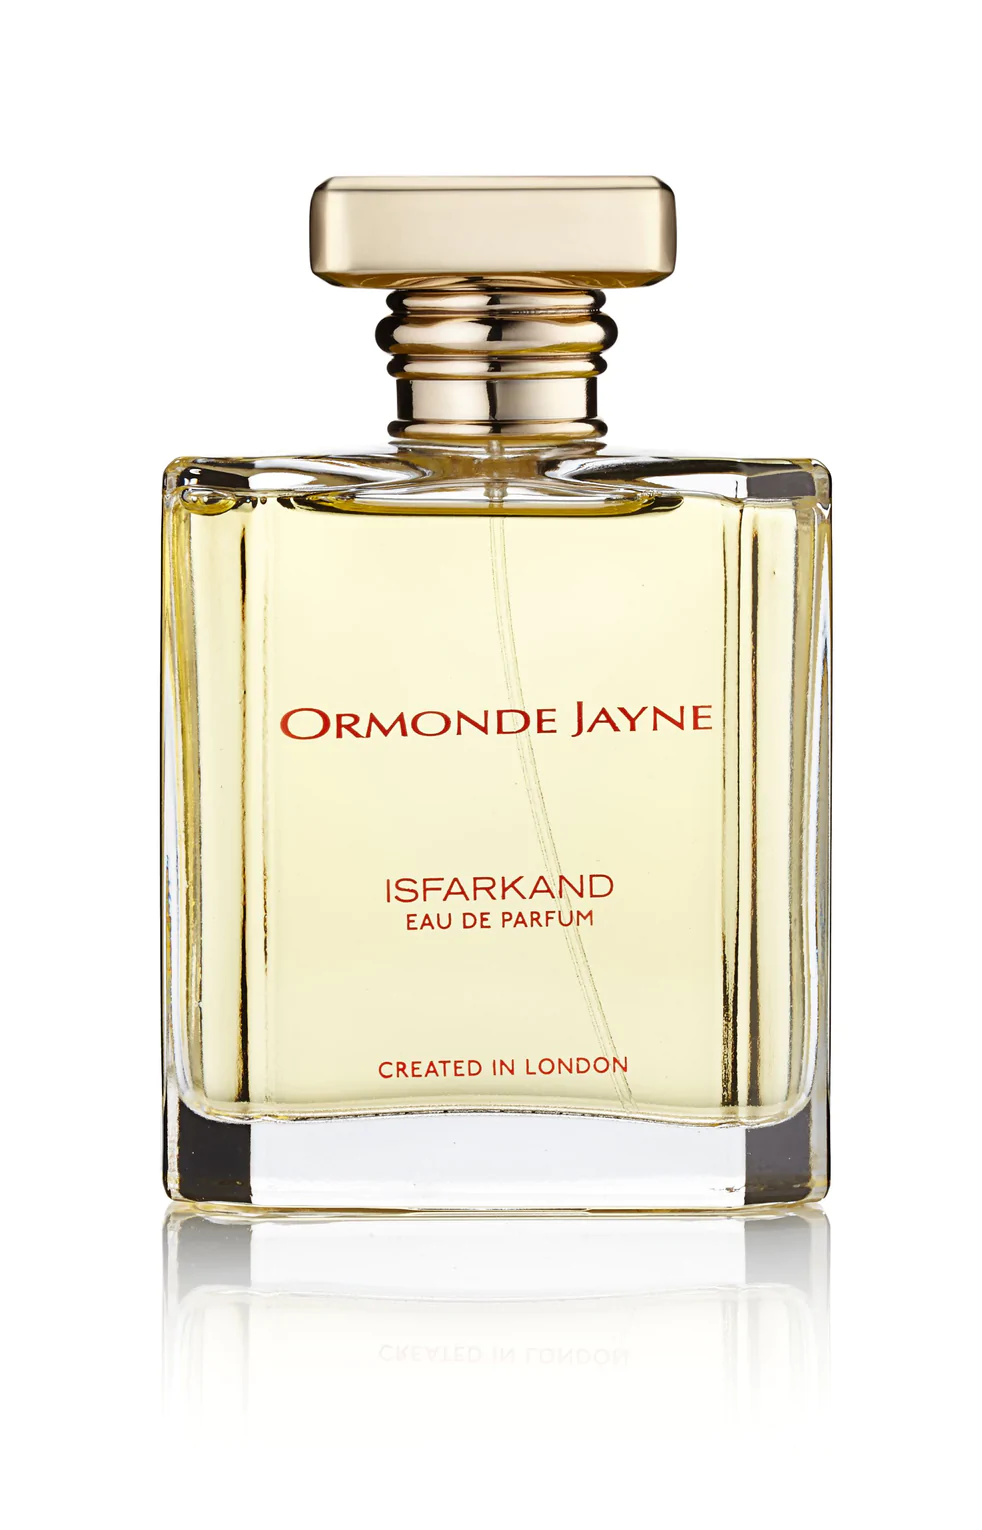 Ormonde Jayne - Isfarkand - Eau de Parfum